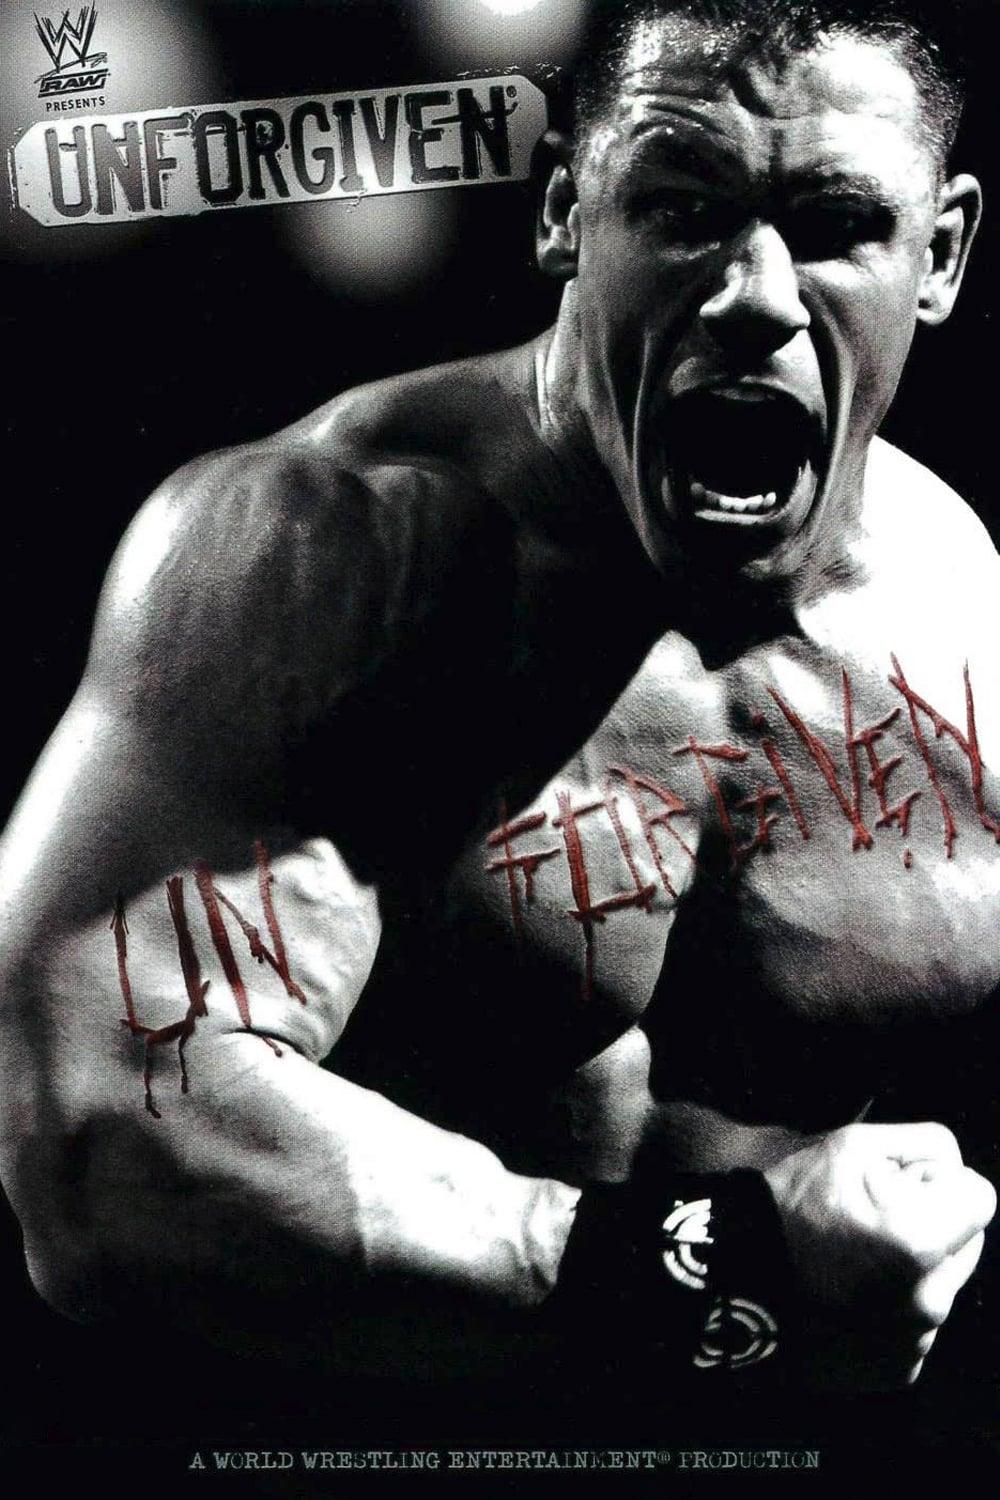 WWE Unforgiven 2006 poster